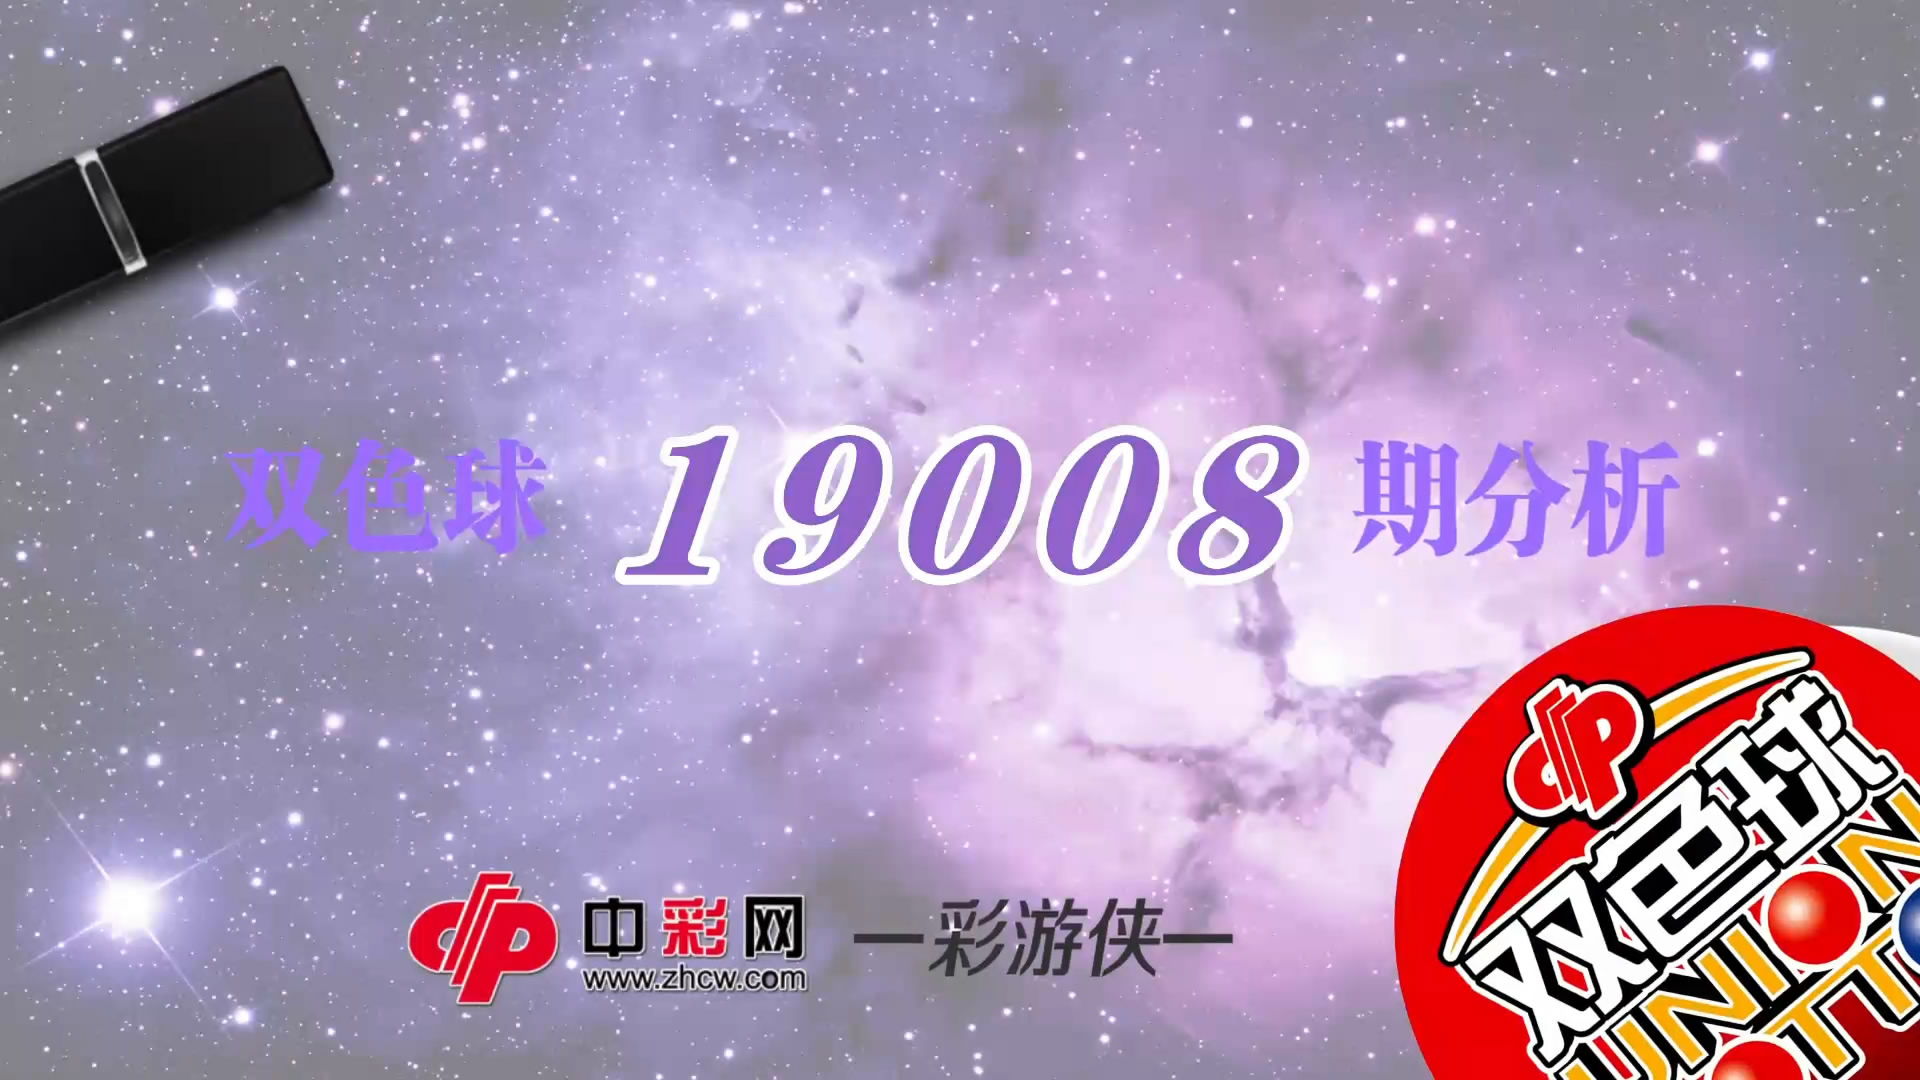 【中彩视频】彩游侠双色球第19008期